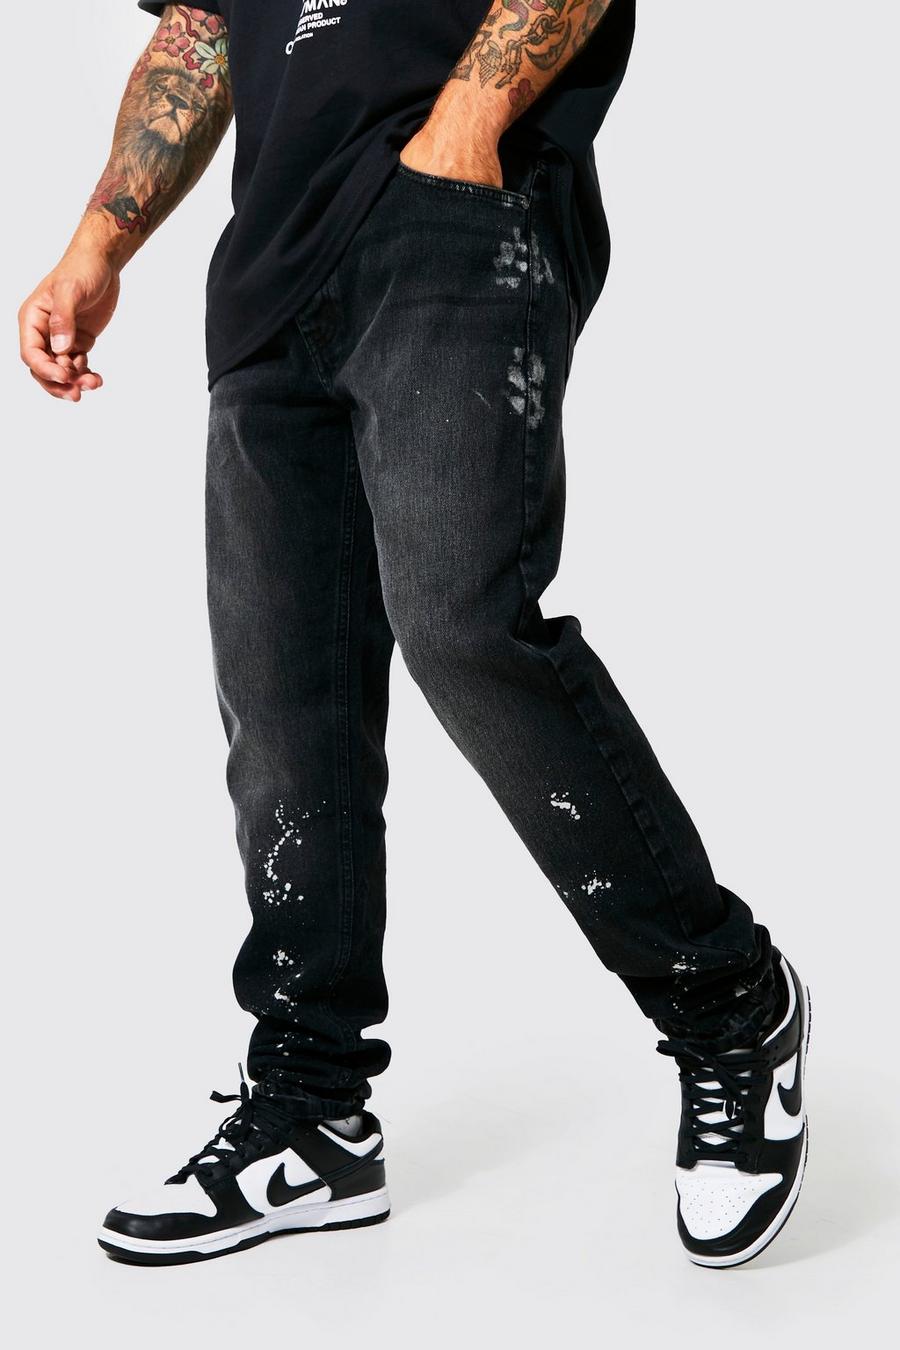 Jeans Slim Fit candeggiati con fondo smagliato, Washed black